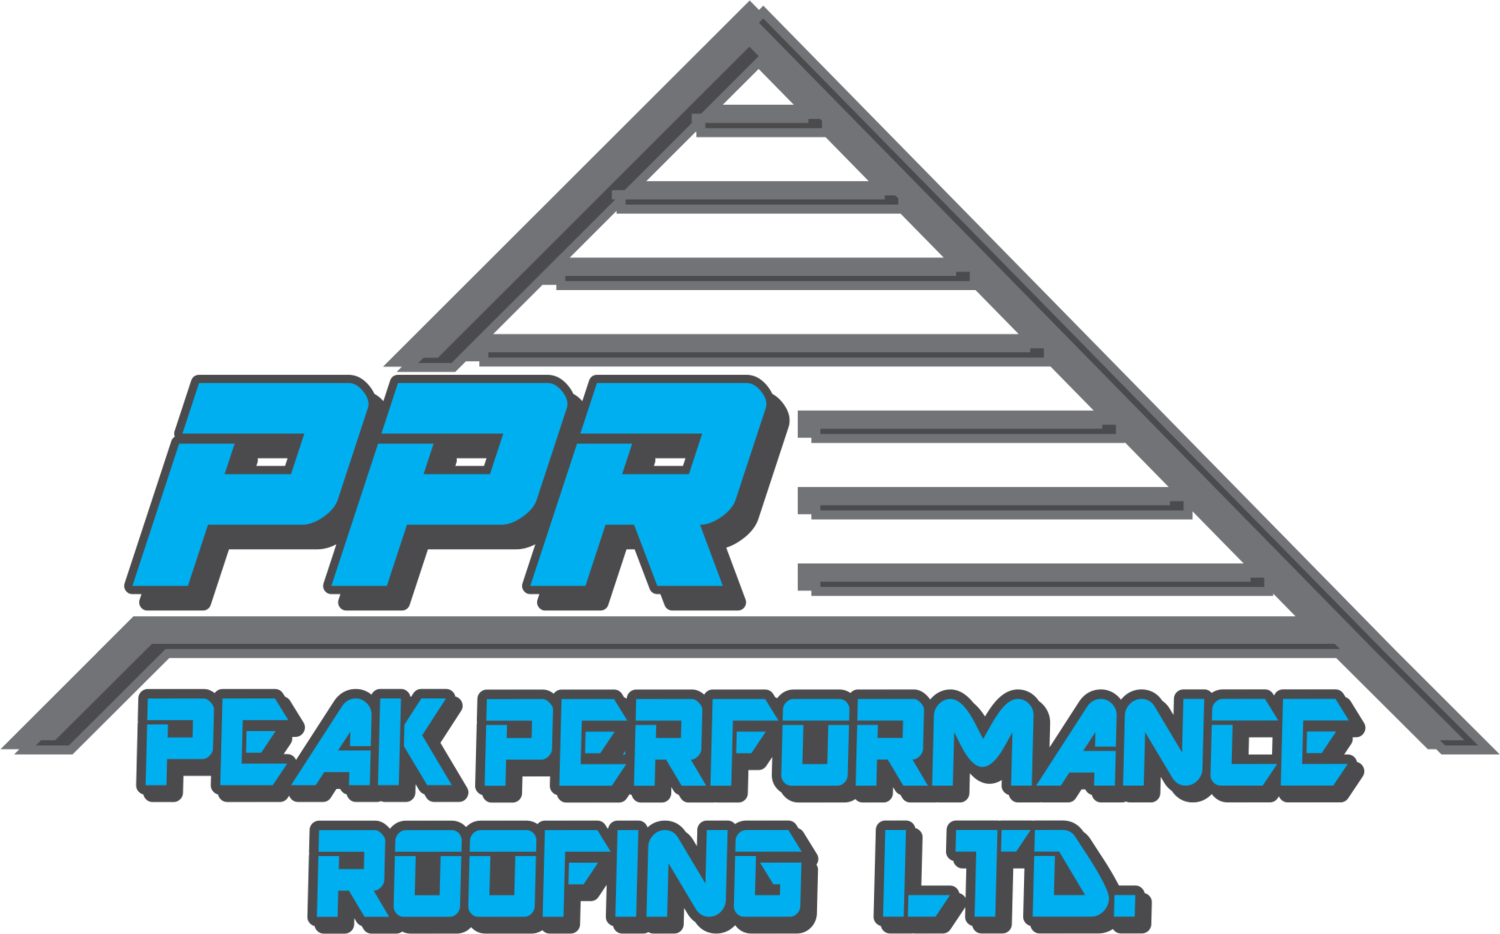 Peak Performance Roofing Ltd.